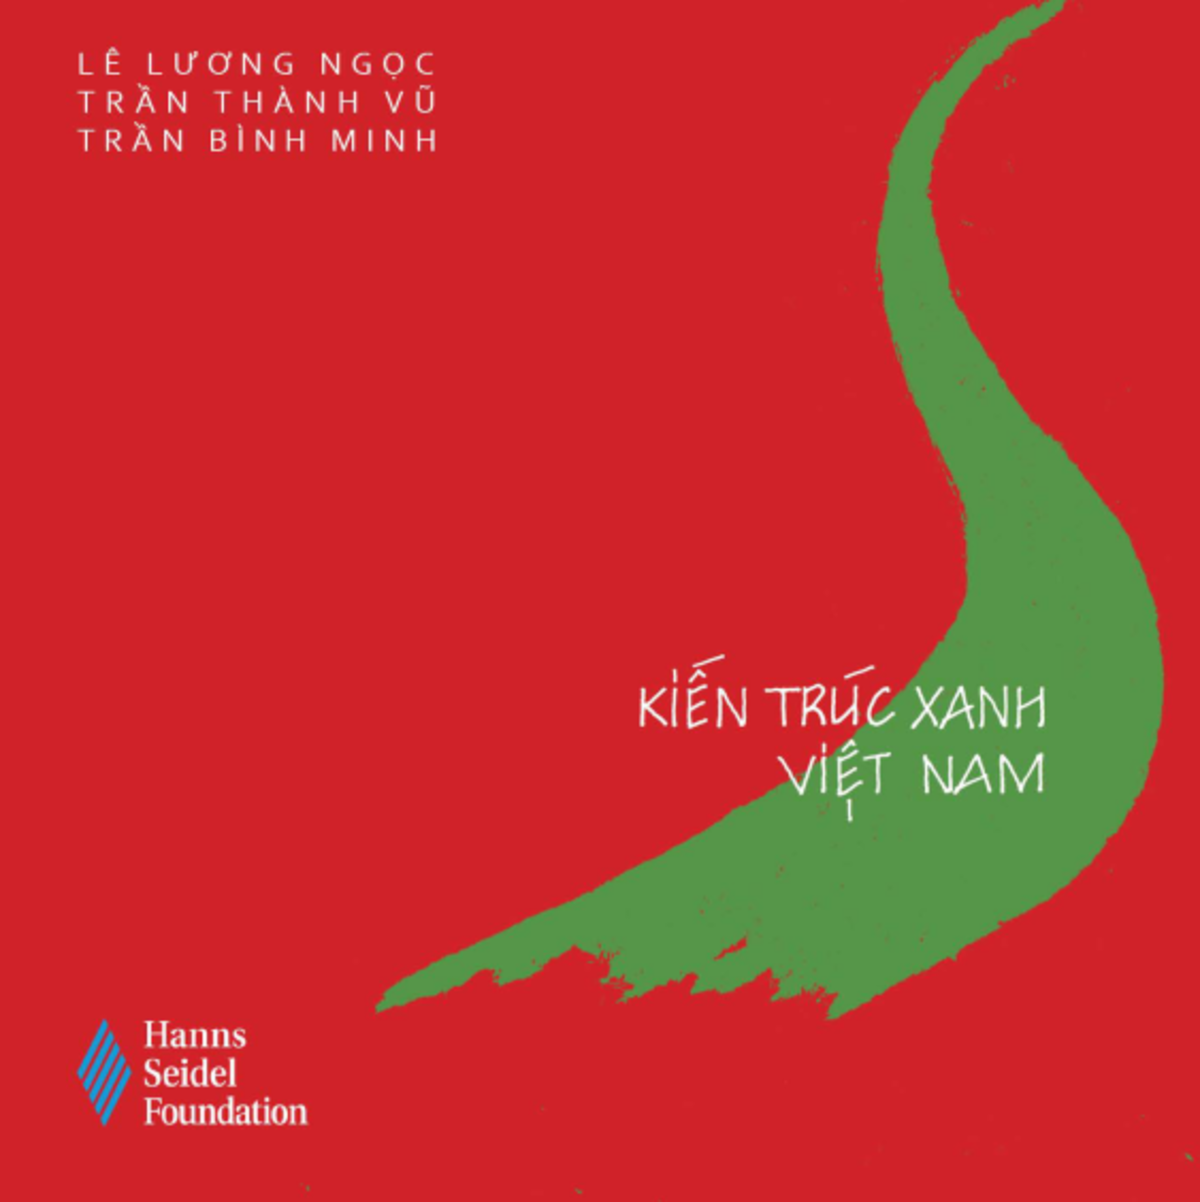 Chương trình phát miễn phí cuốn sách “Kiến trúc xanh Việt Nam”